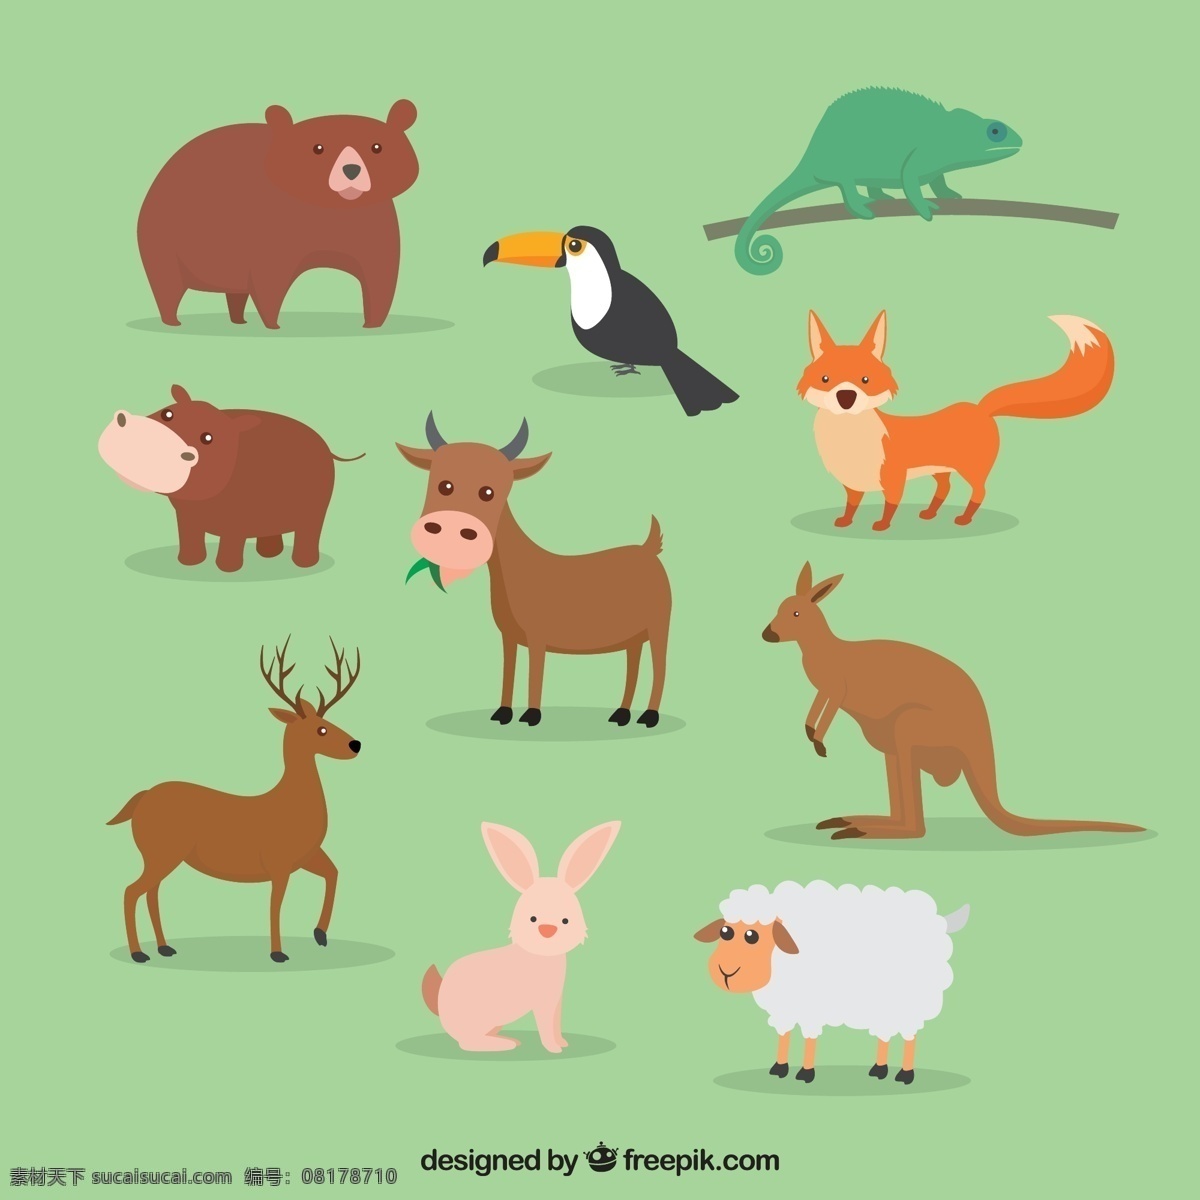 组 可爱 简约 创意 动物 卡通 卡哇伊 矢量素材 小动物 创意设计 元素 生物元素 动物元素